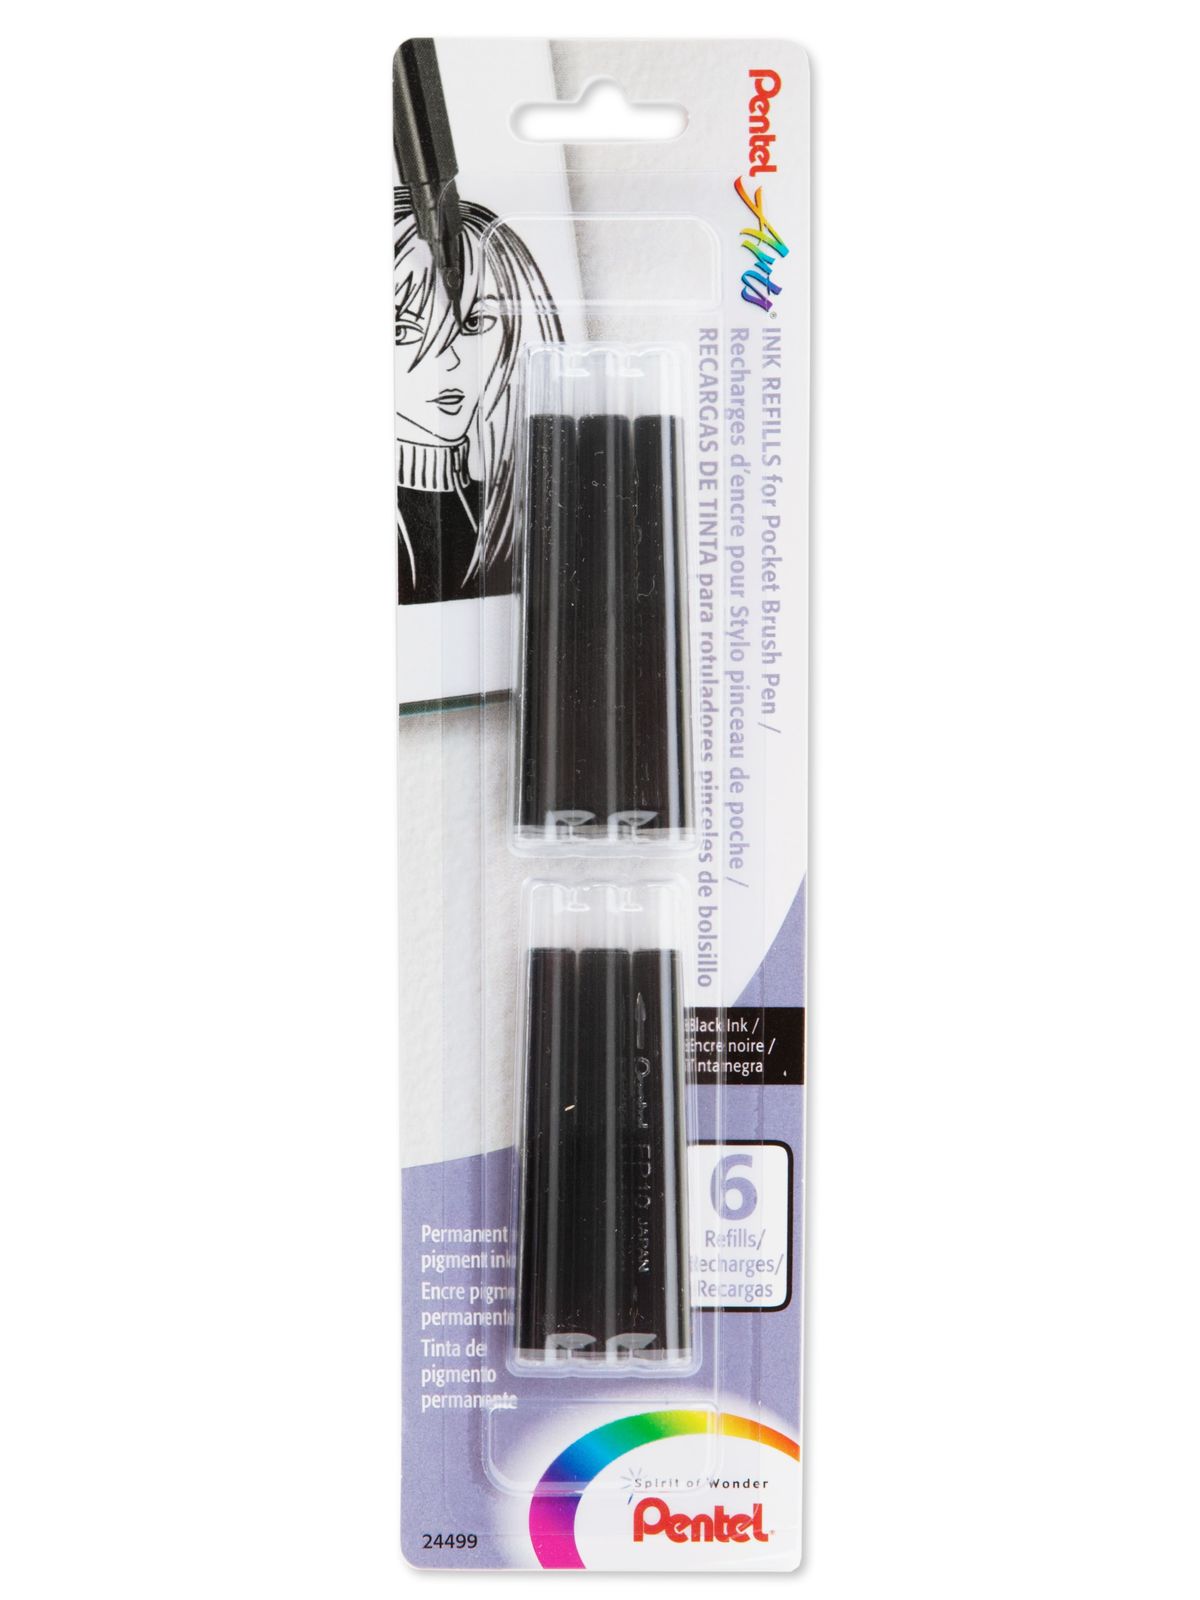 Pocket Brush Pen Refills, Pack Of 6 Black